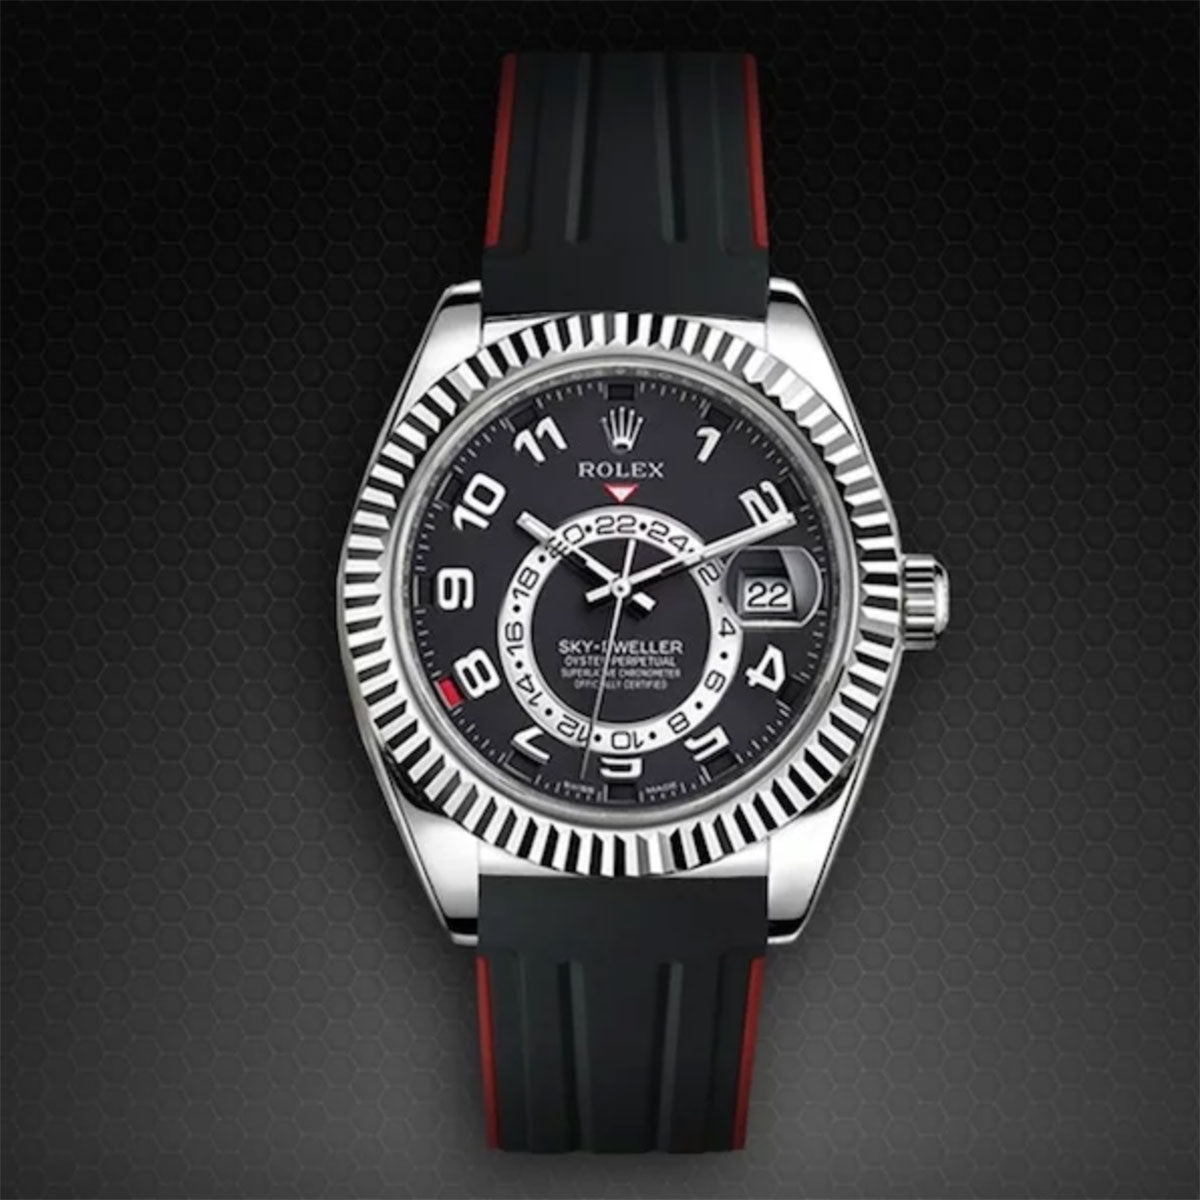 Rolex - Rubber B - Bracelet caoutchouc pour Sky-Dweller sur cuir - VulChromatic® - watch band leather strap - ABP Concept -